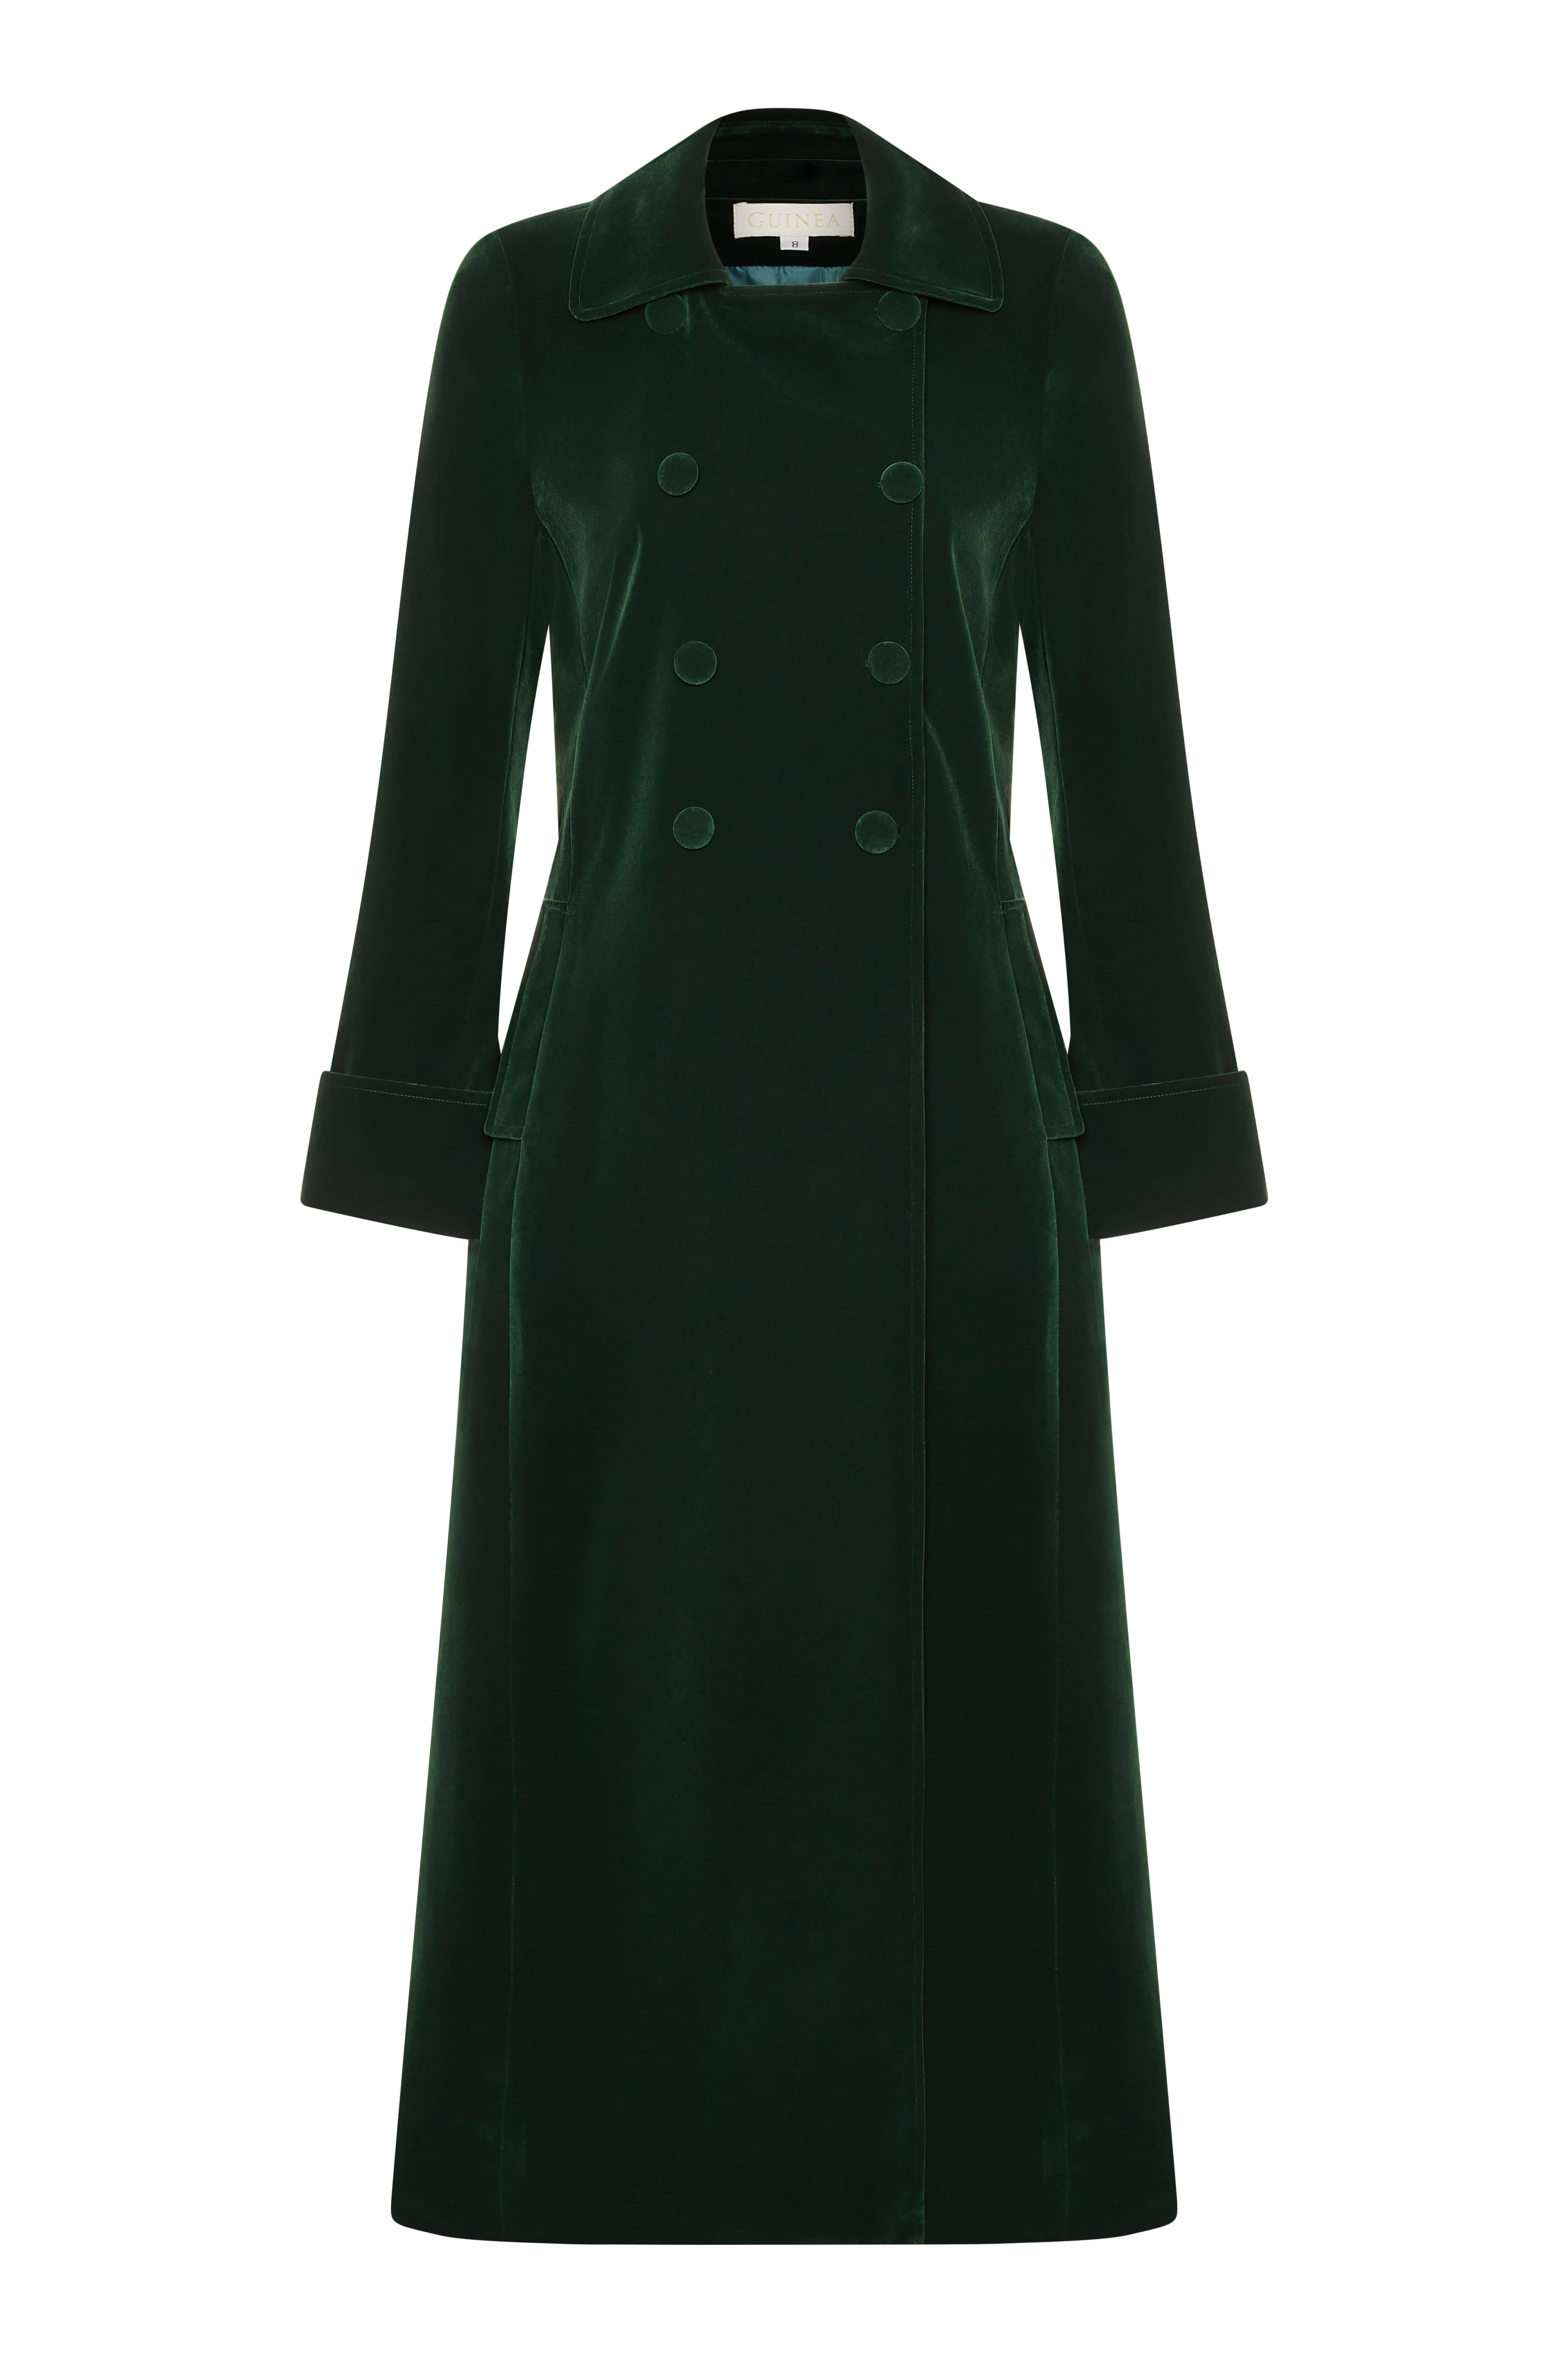 Women’s Long Green Velvet Coat - Boho Glamour Extra Small Guinea